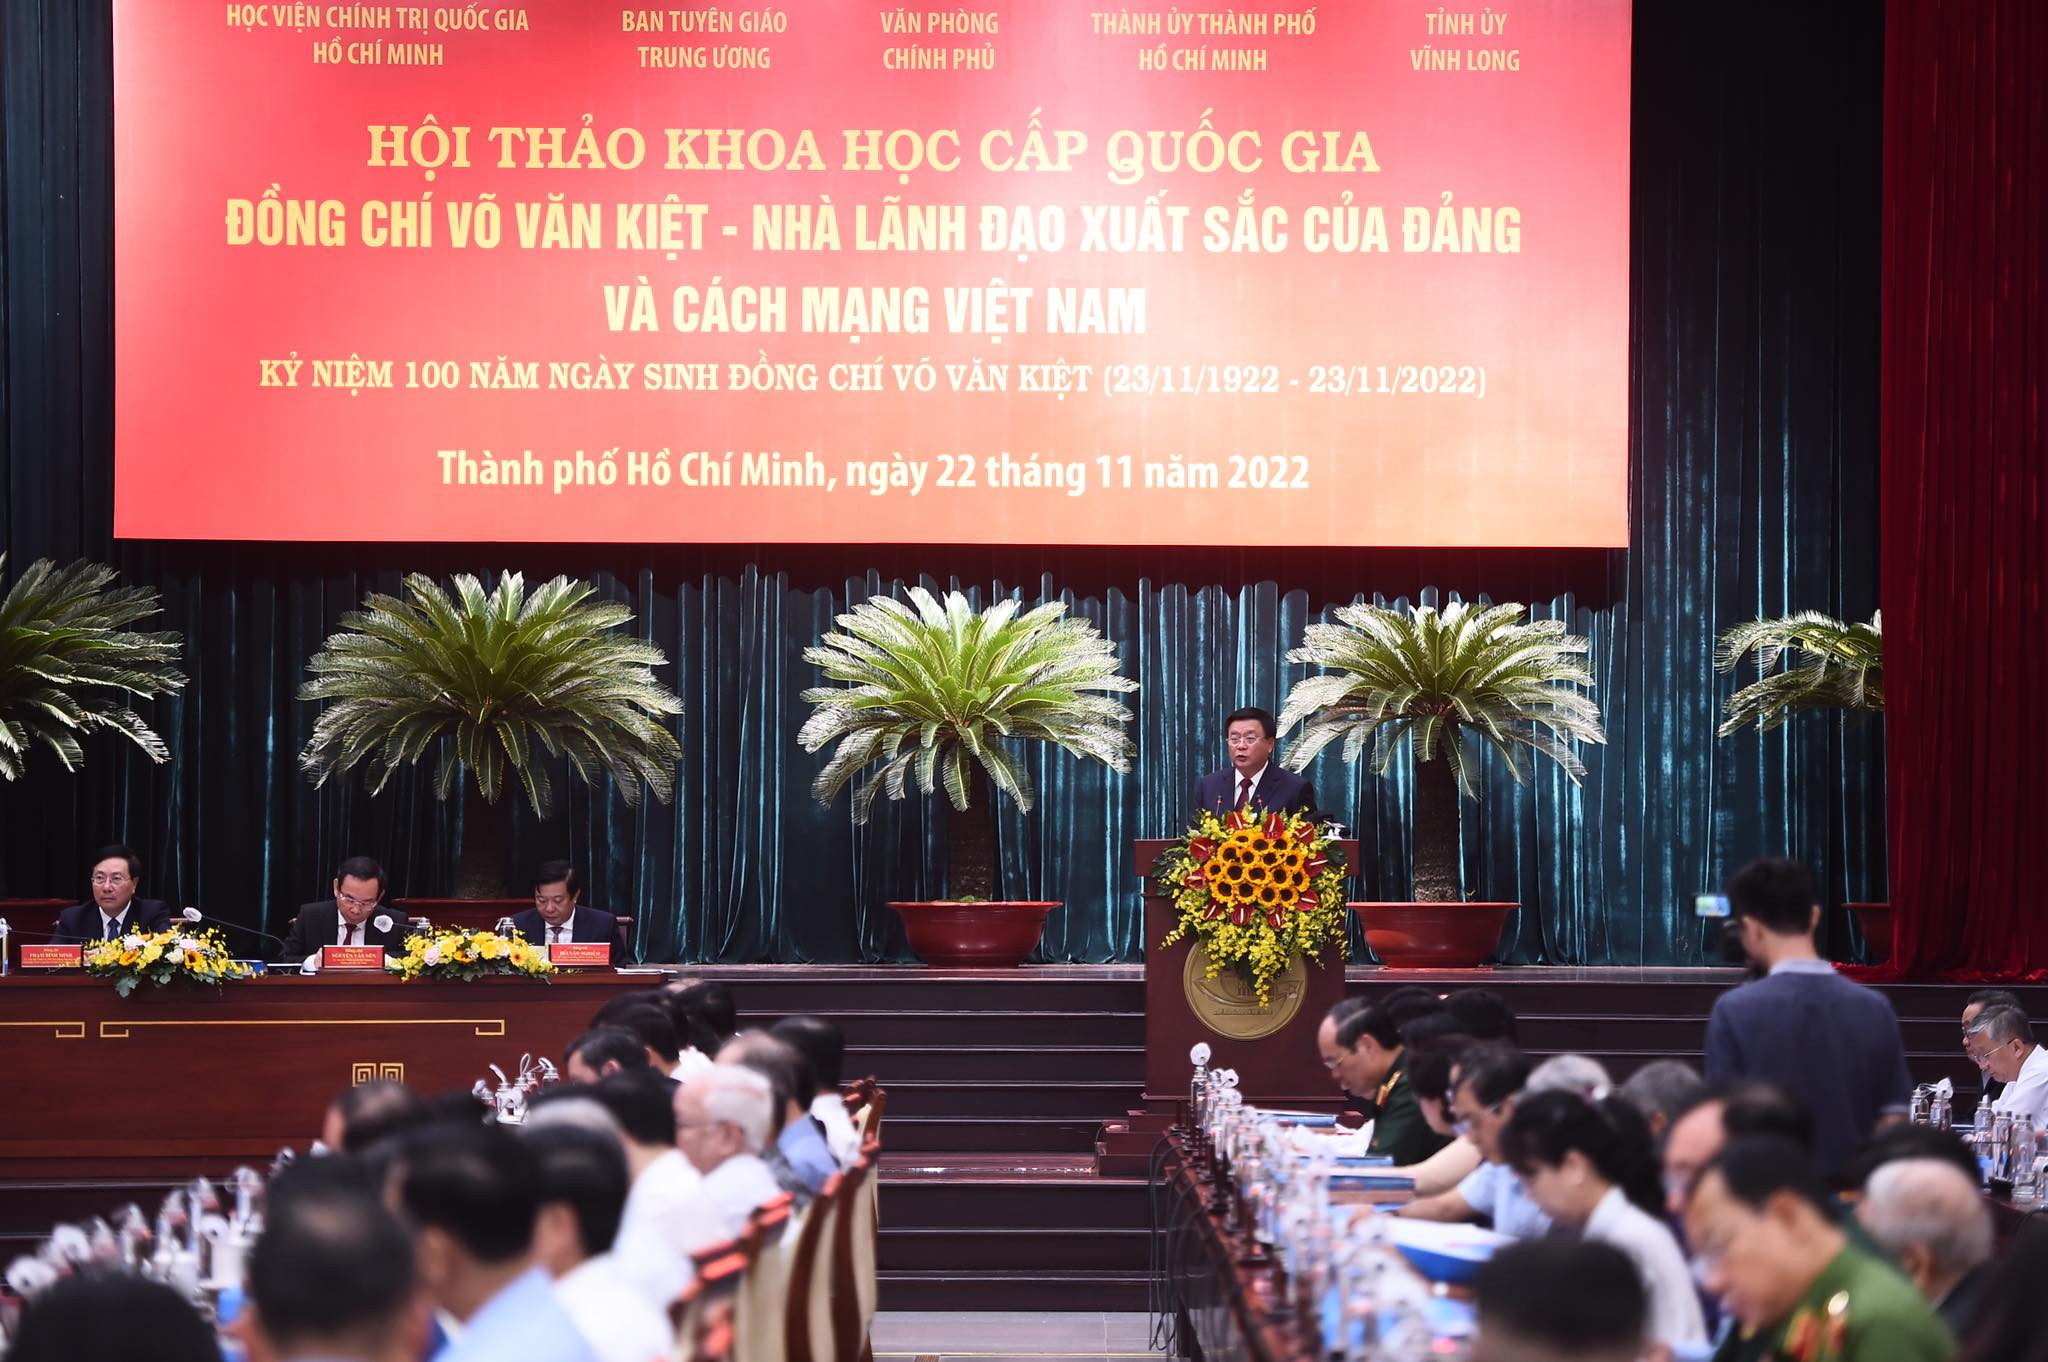 Cố Thủ tướng Võ Văn Kiệt - nhà lãnh đạo xuất sắc của Đảng và cách mạng VIệt Nam